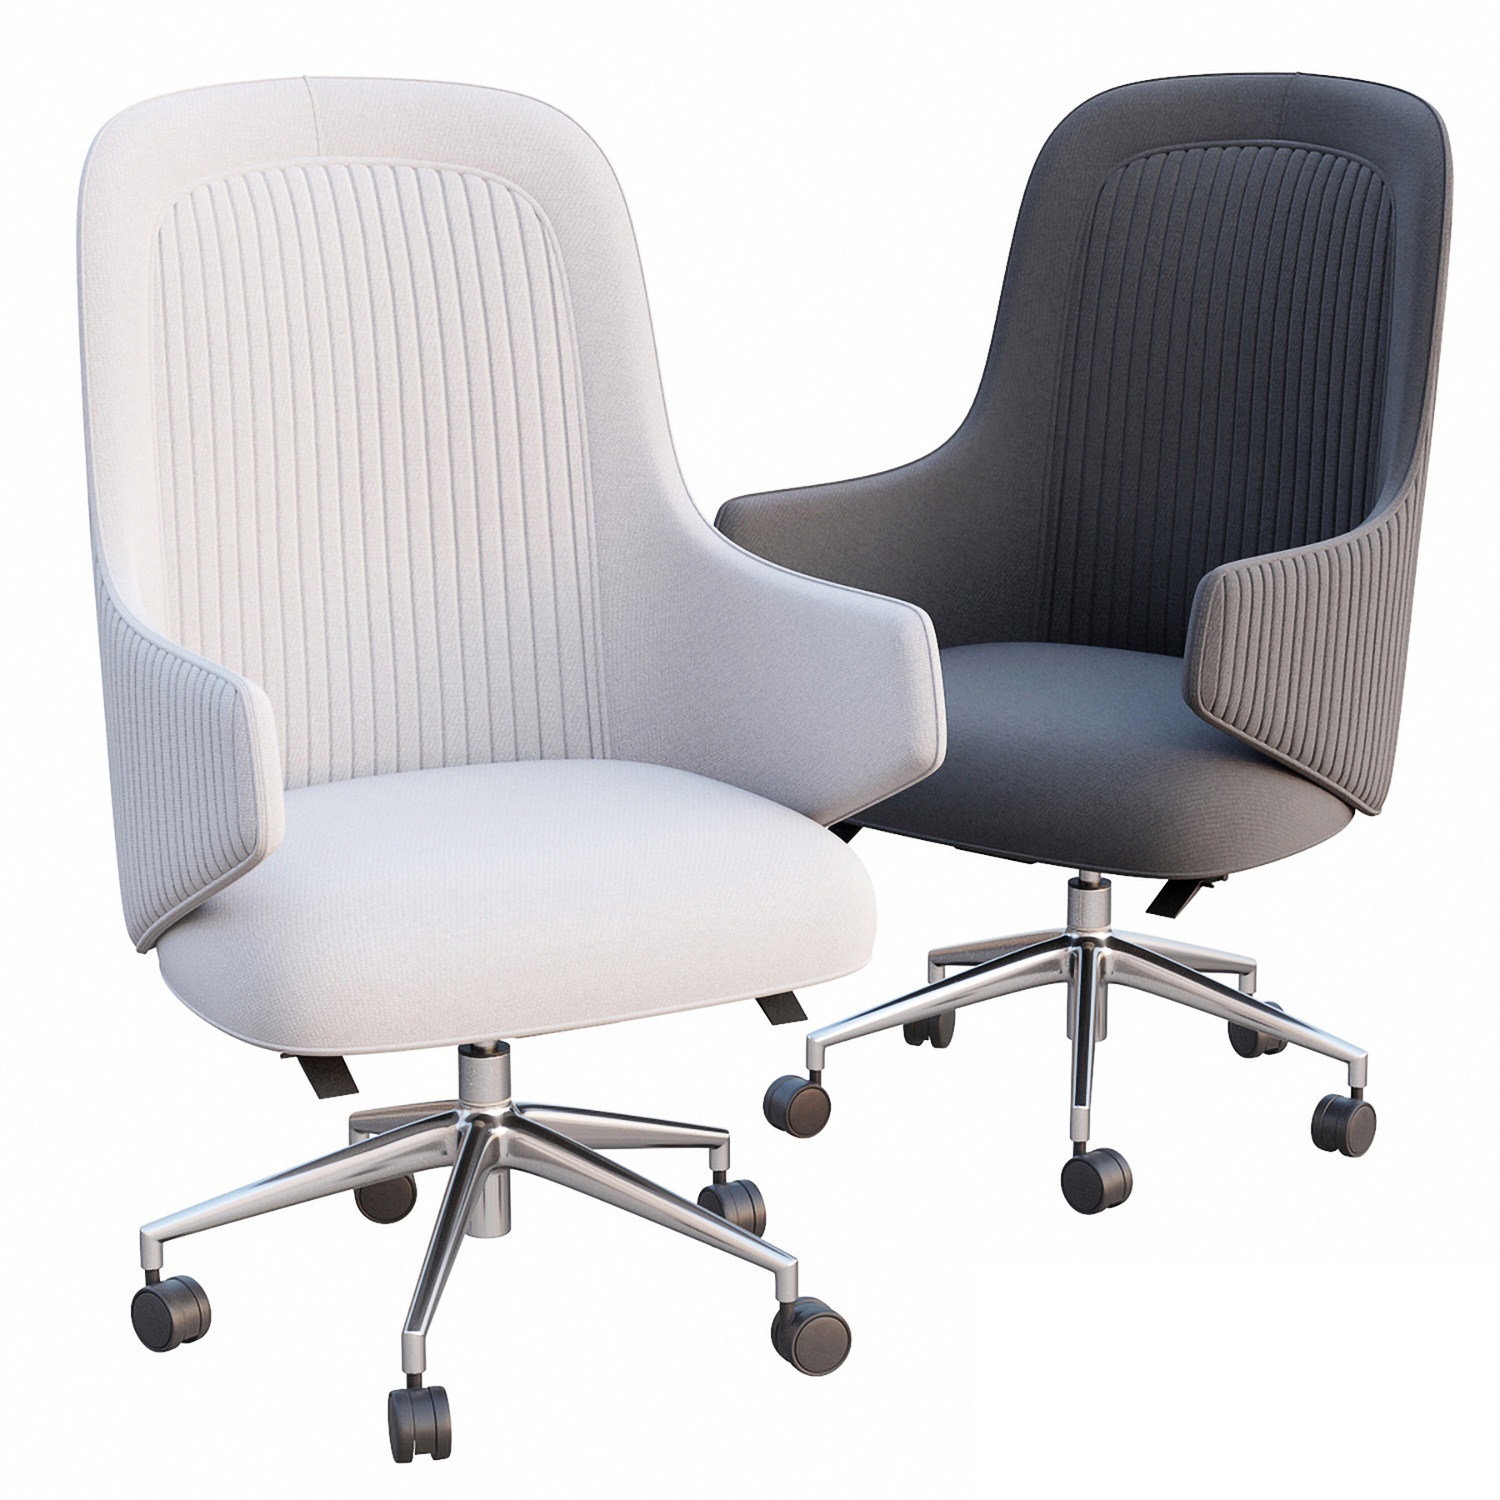 16现代布艺办公椅,带轮子的可旋转的椅子,布面座椅3d模型下载